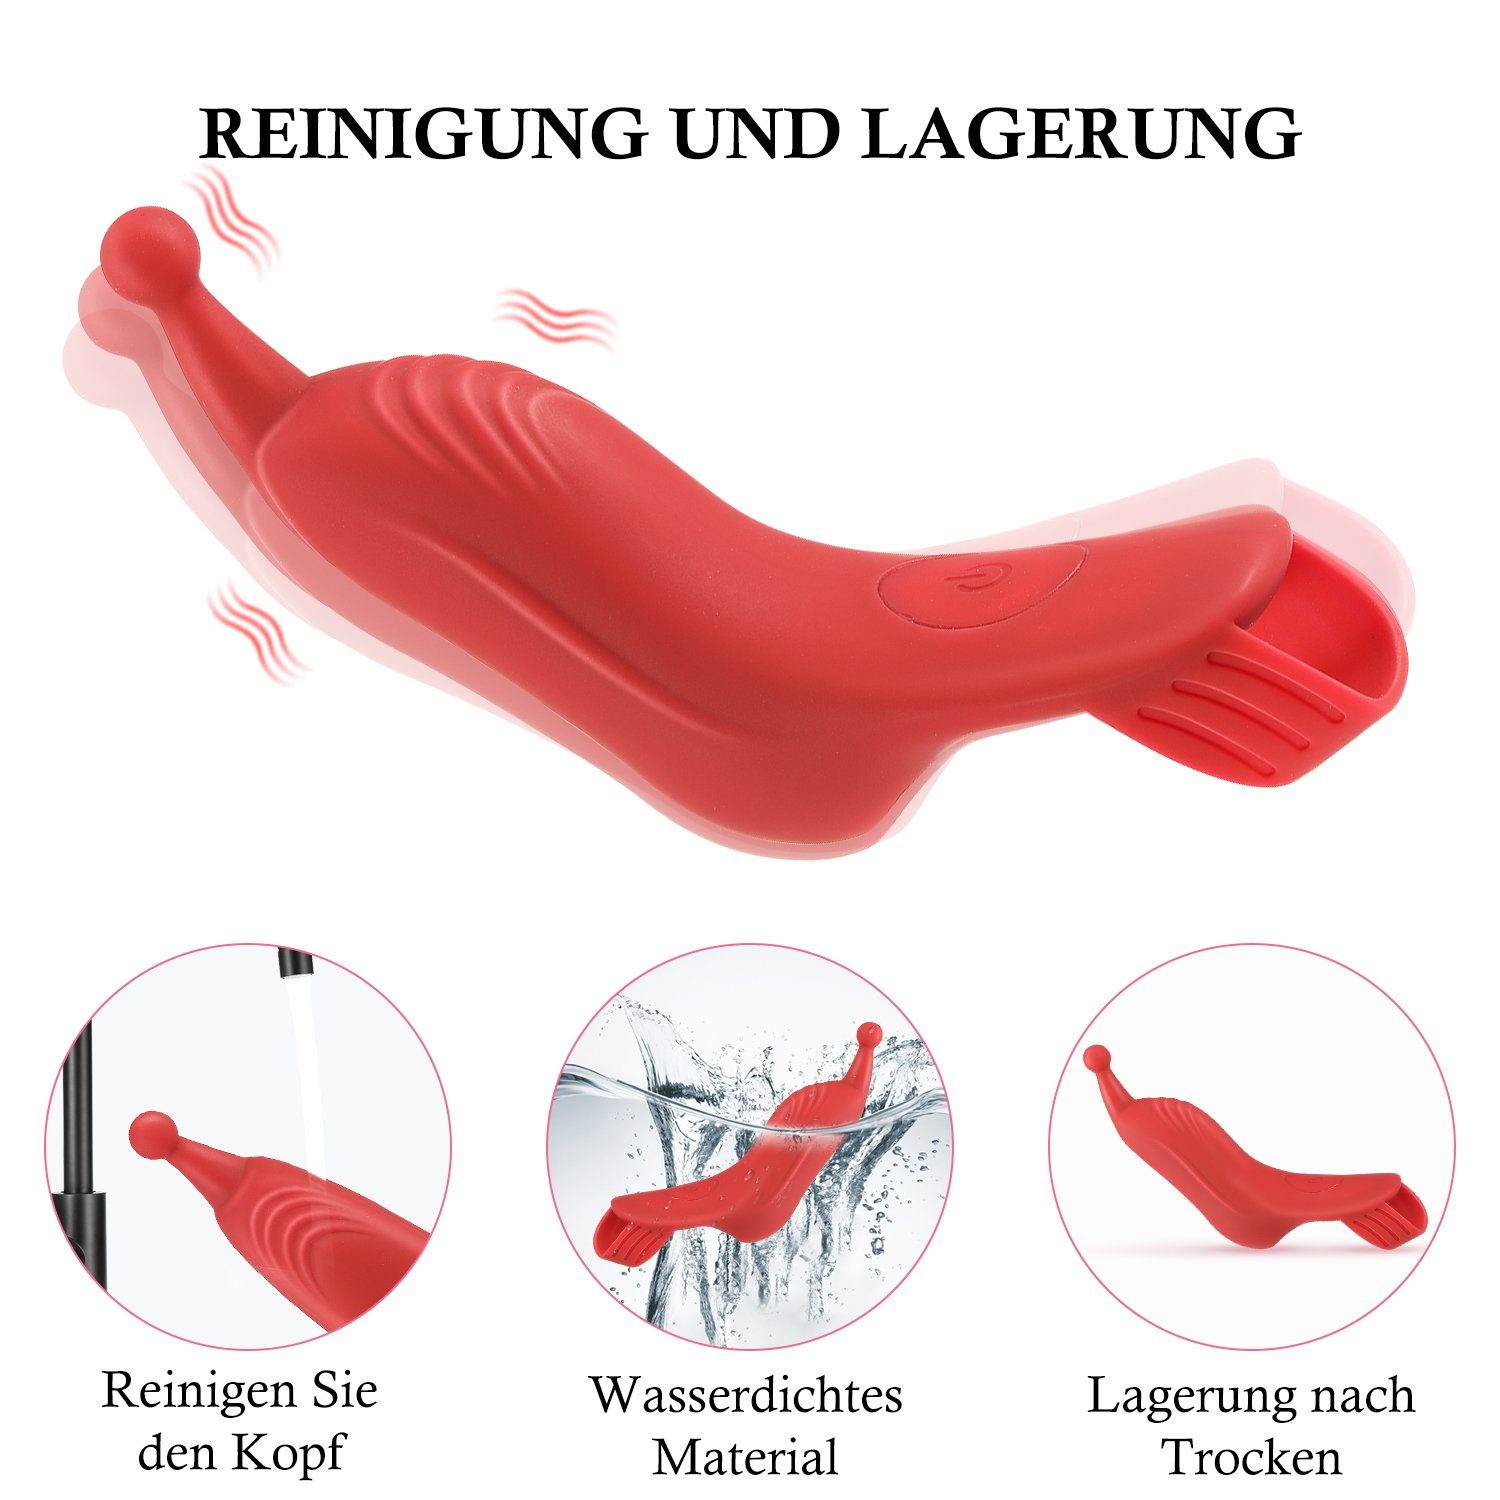 LOVONLIVE Finger-Vibrator Erotik Vaginal,Brustwarzenstimulation Sie für Vibrator Sexspielzeug mit Vibrationsmodi, G-Punkt für Paar-Vibratoren Vibratoren Klitoris, 10